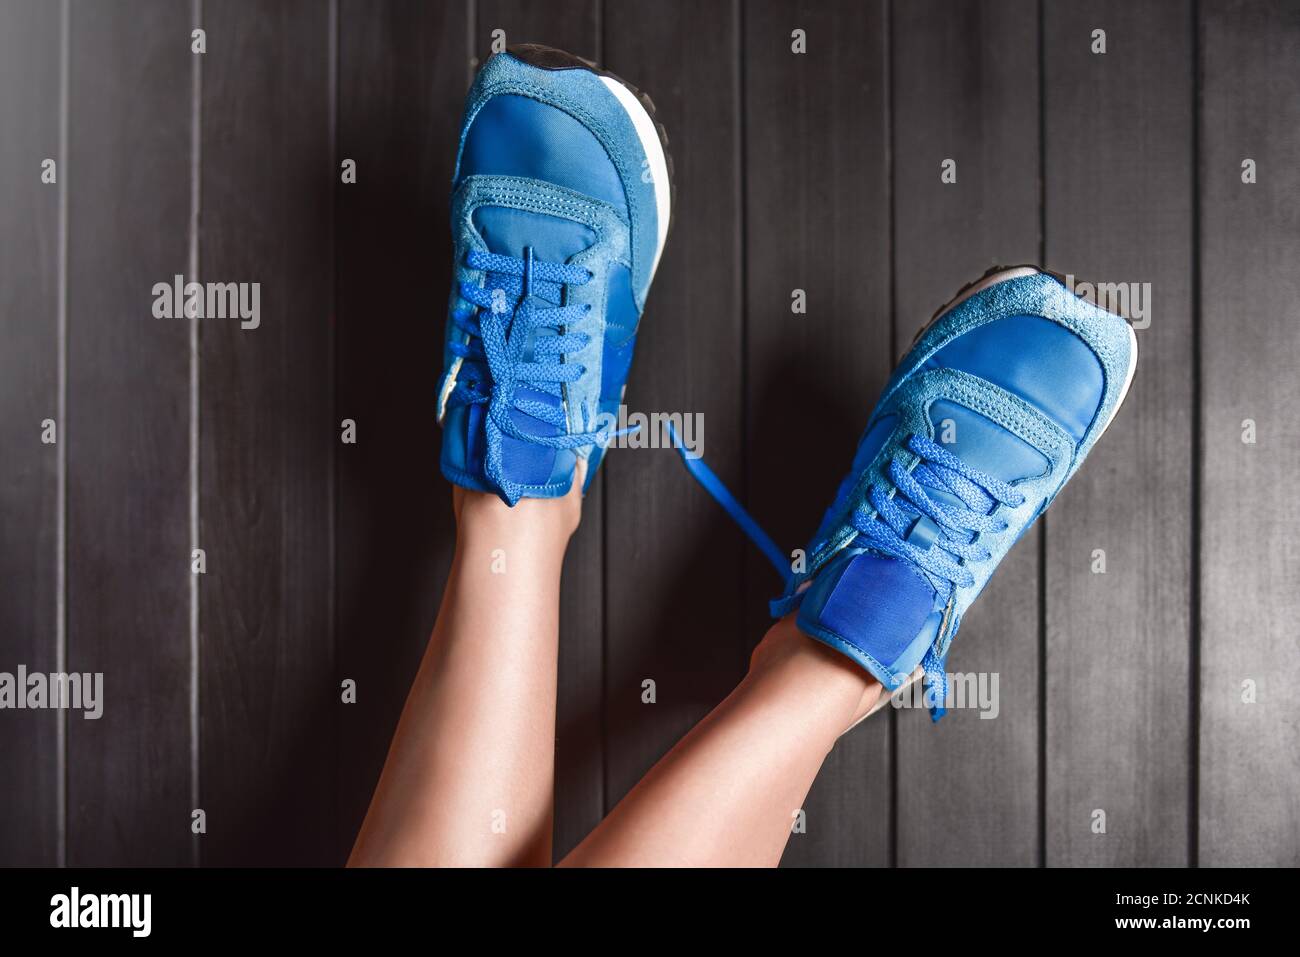 Primer plano imagen de moda de los pies de la mujer, usando